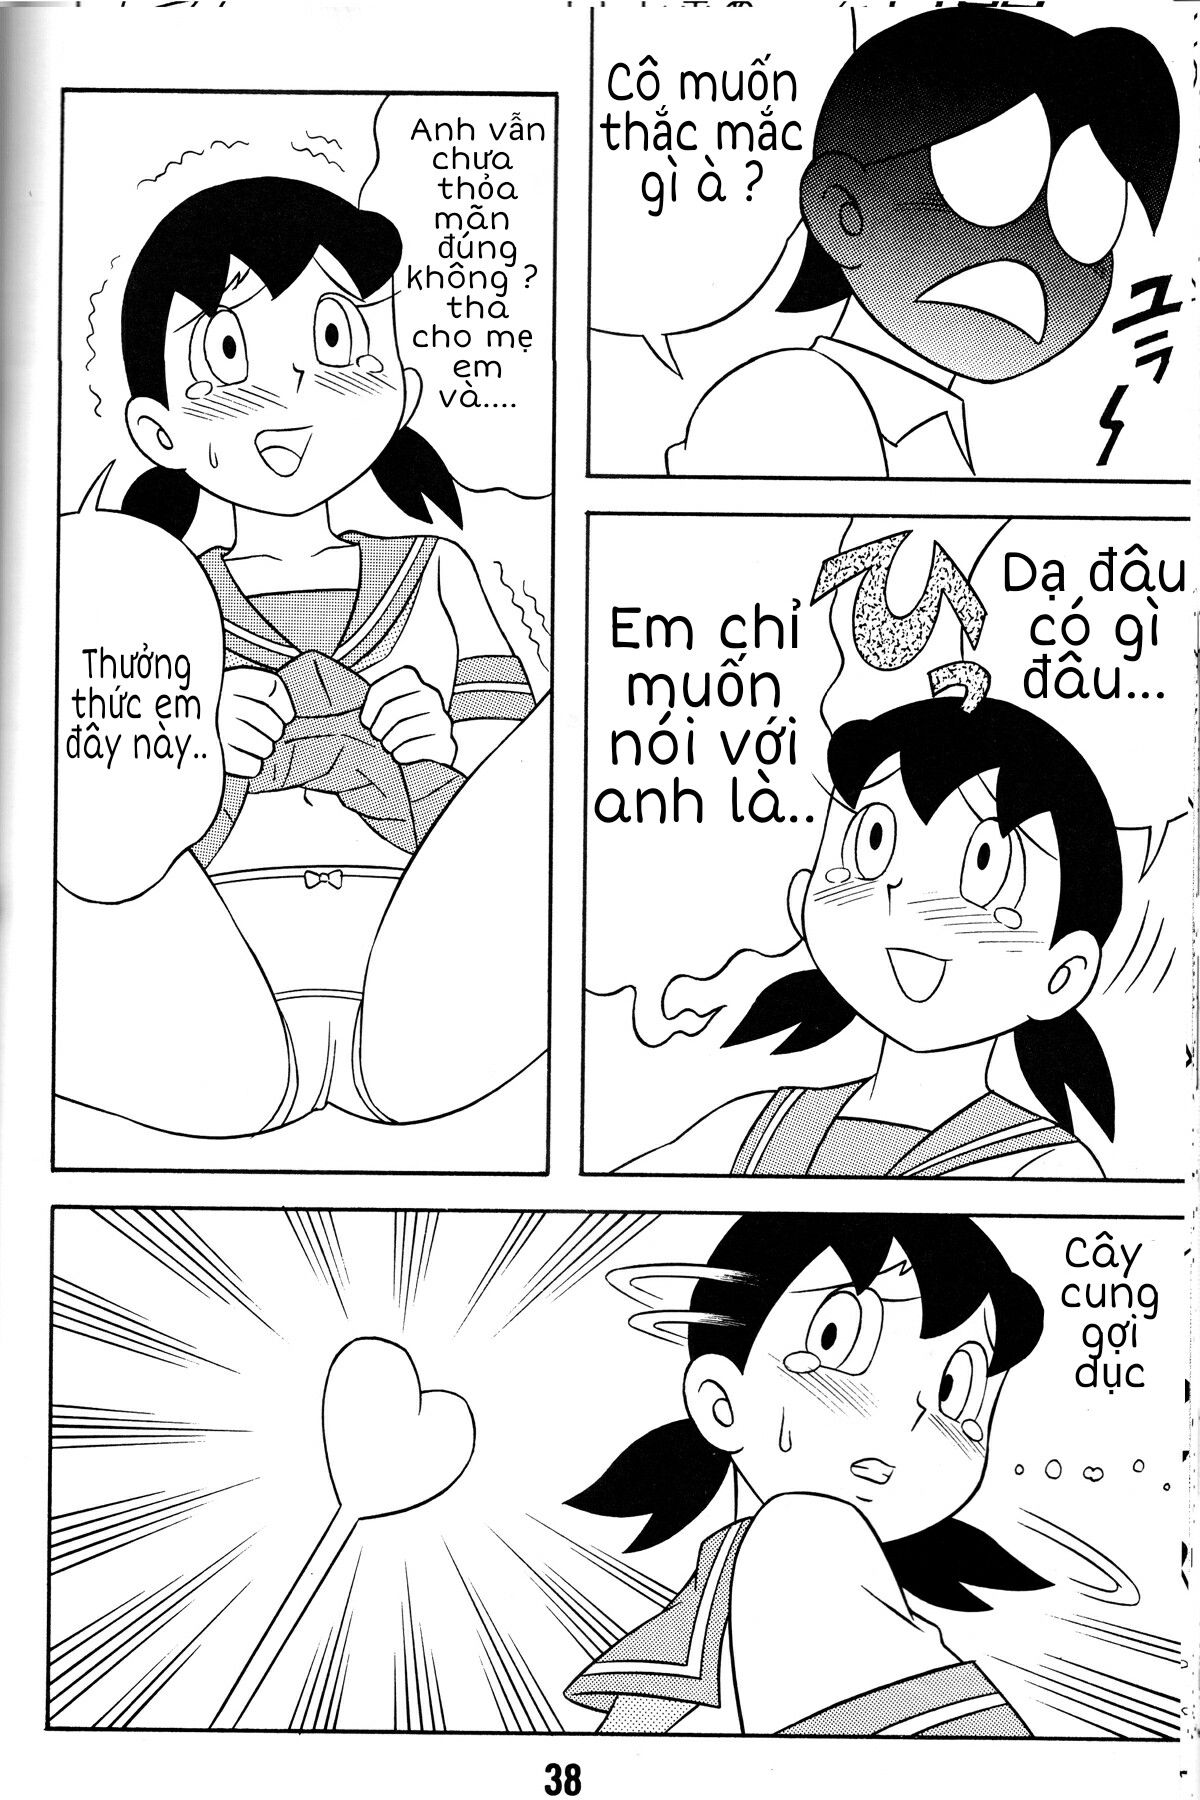 Tuyển Tập Doraemon Doujinshi 18+  Chapter 2 - Tương lai kì diệu - Trang 4